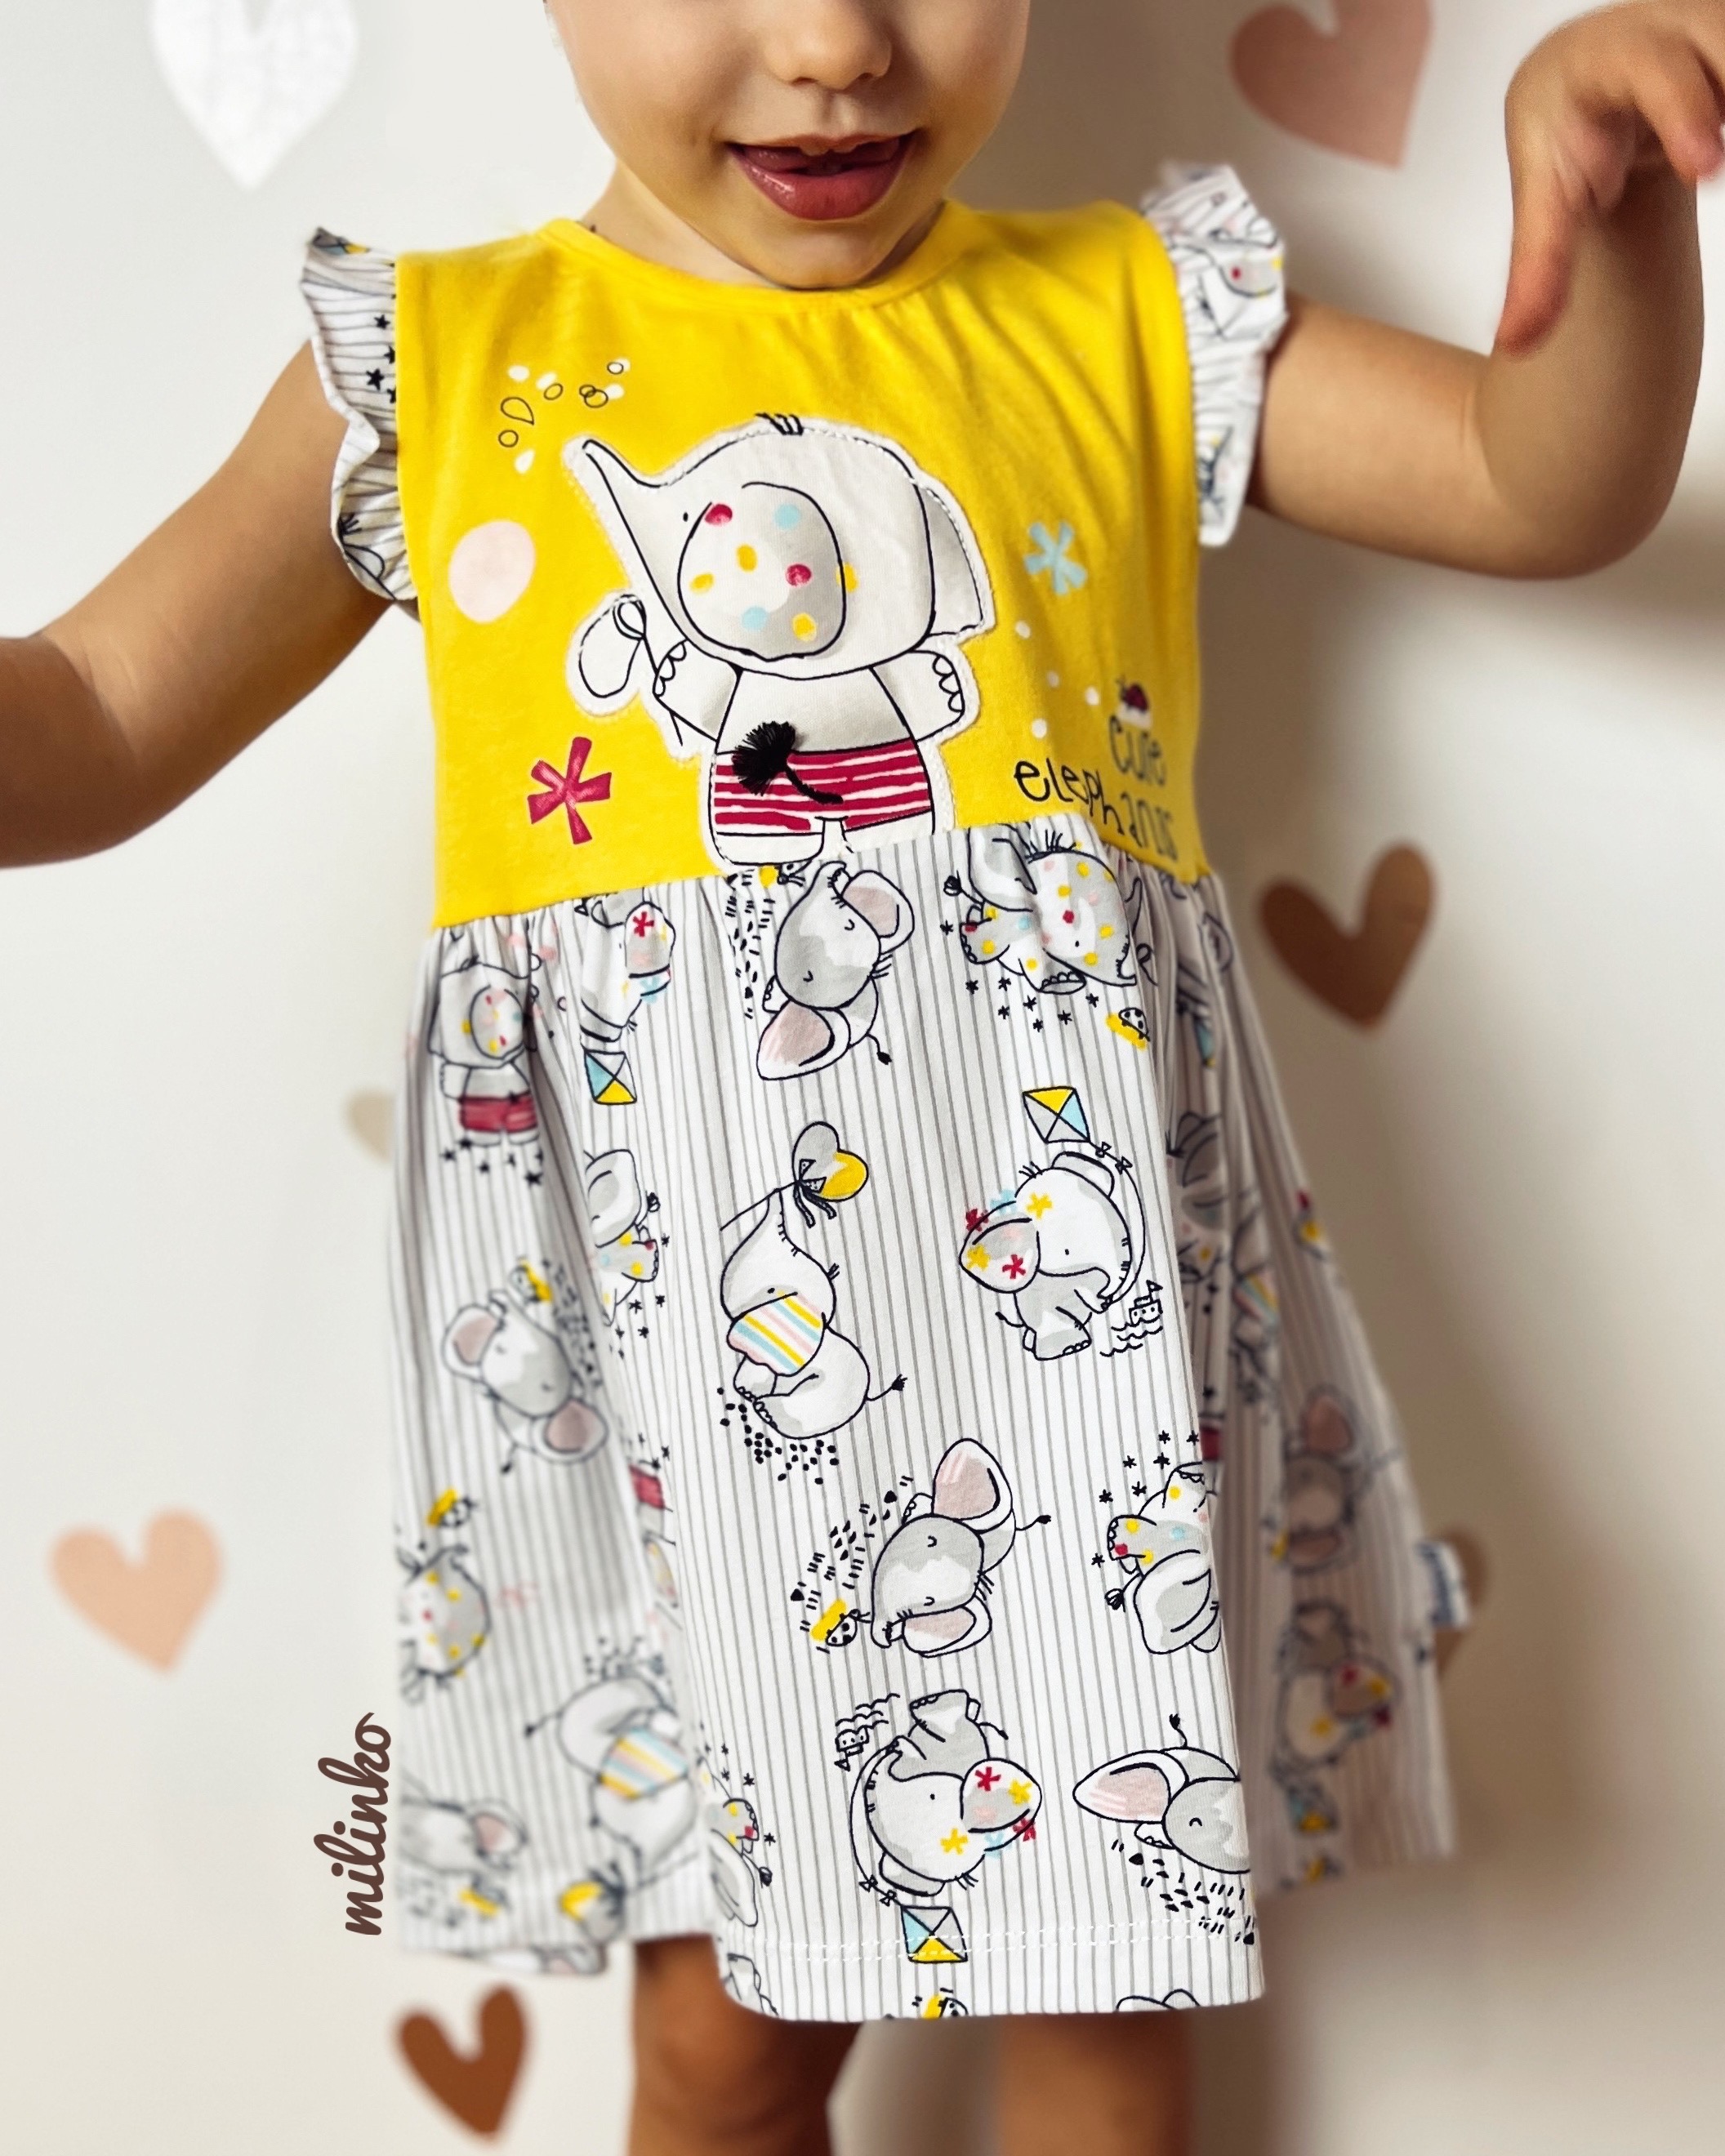 Miniworld Dievčenské letné šaty- Cute Elephants, žlté veľkosť: 74 (6-9m)